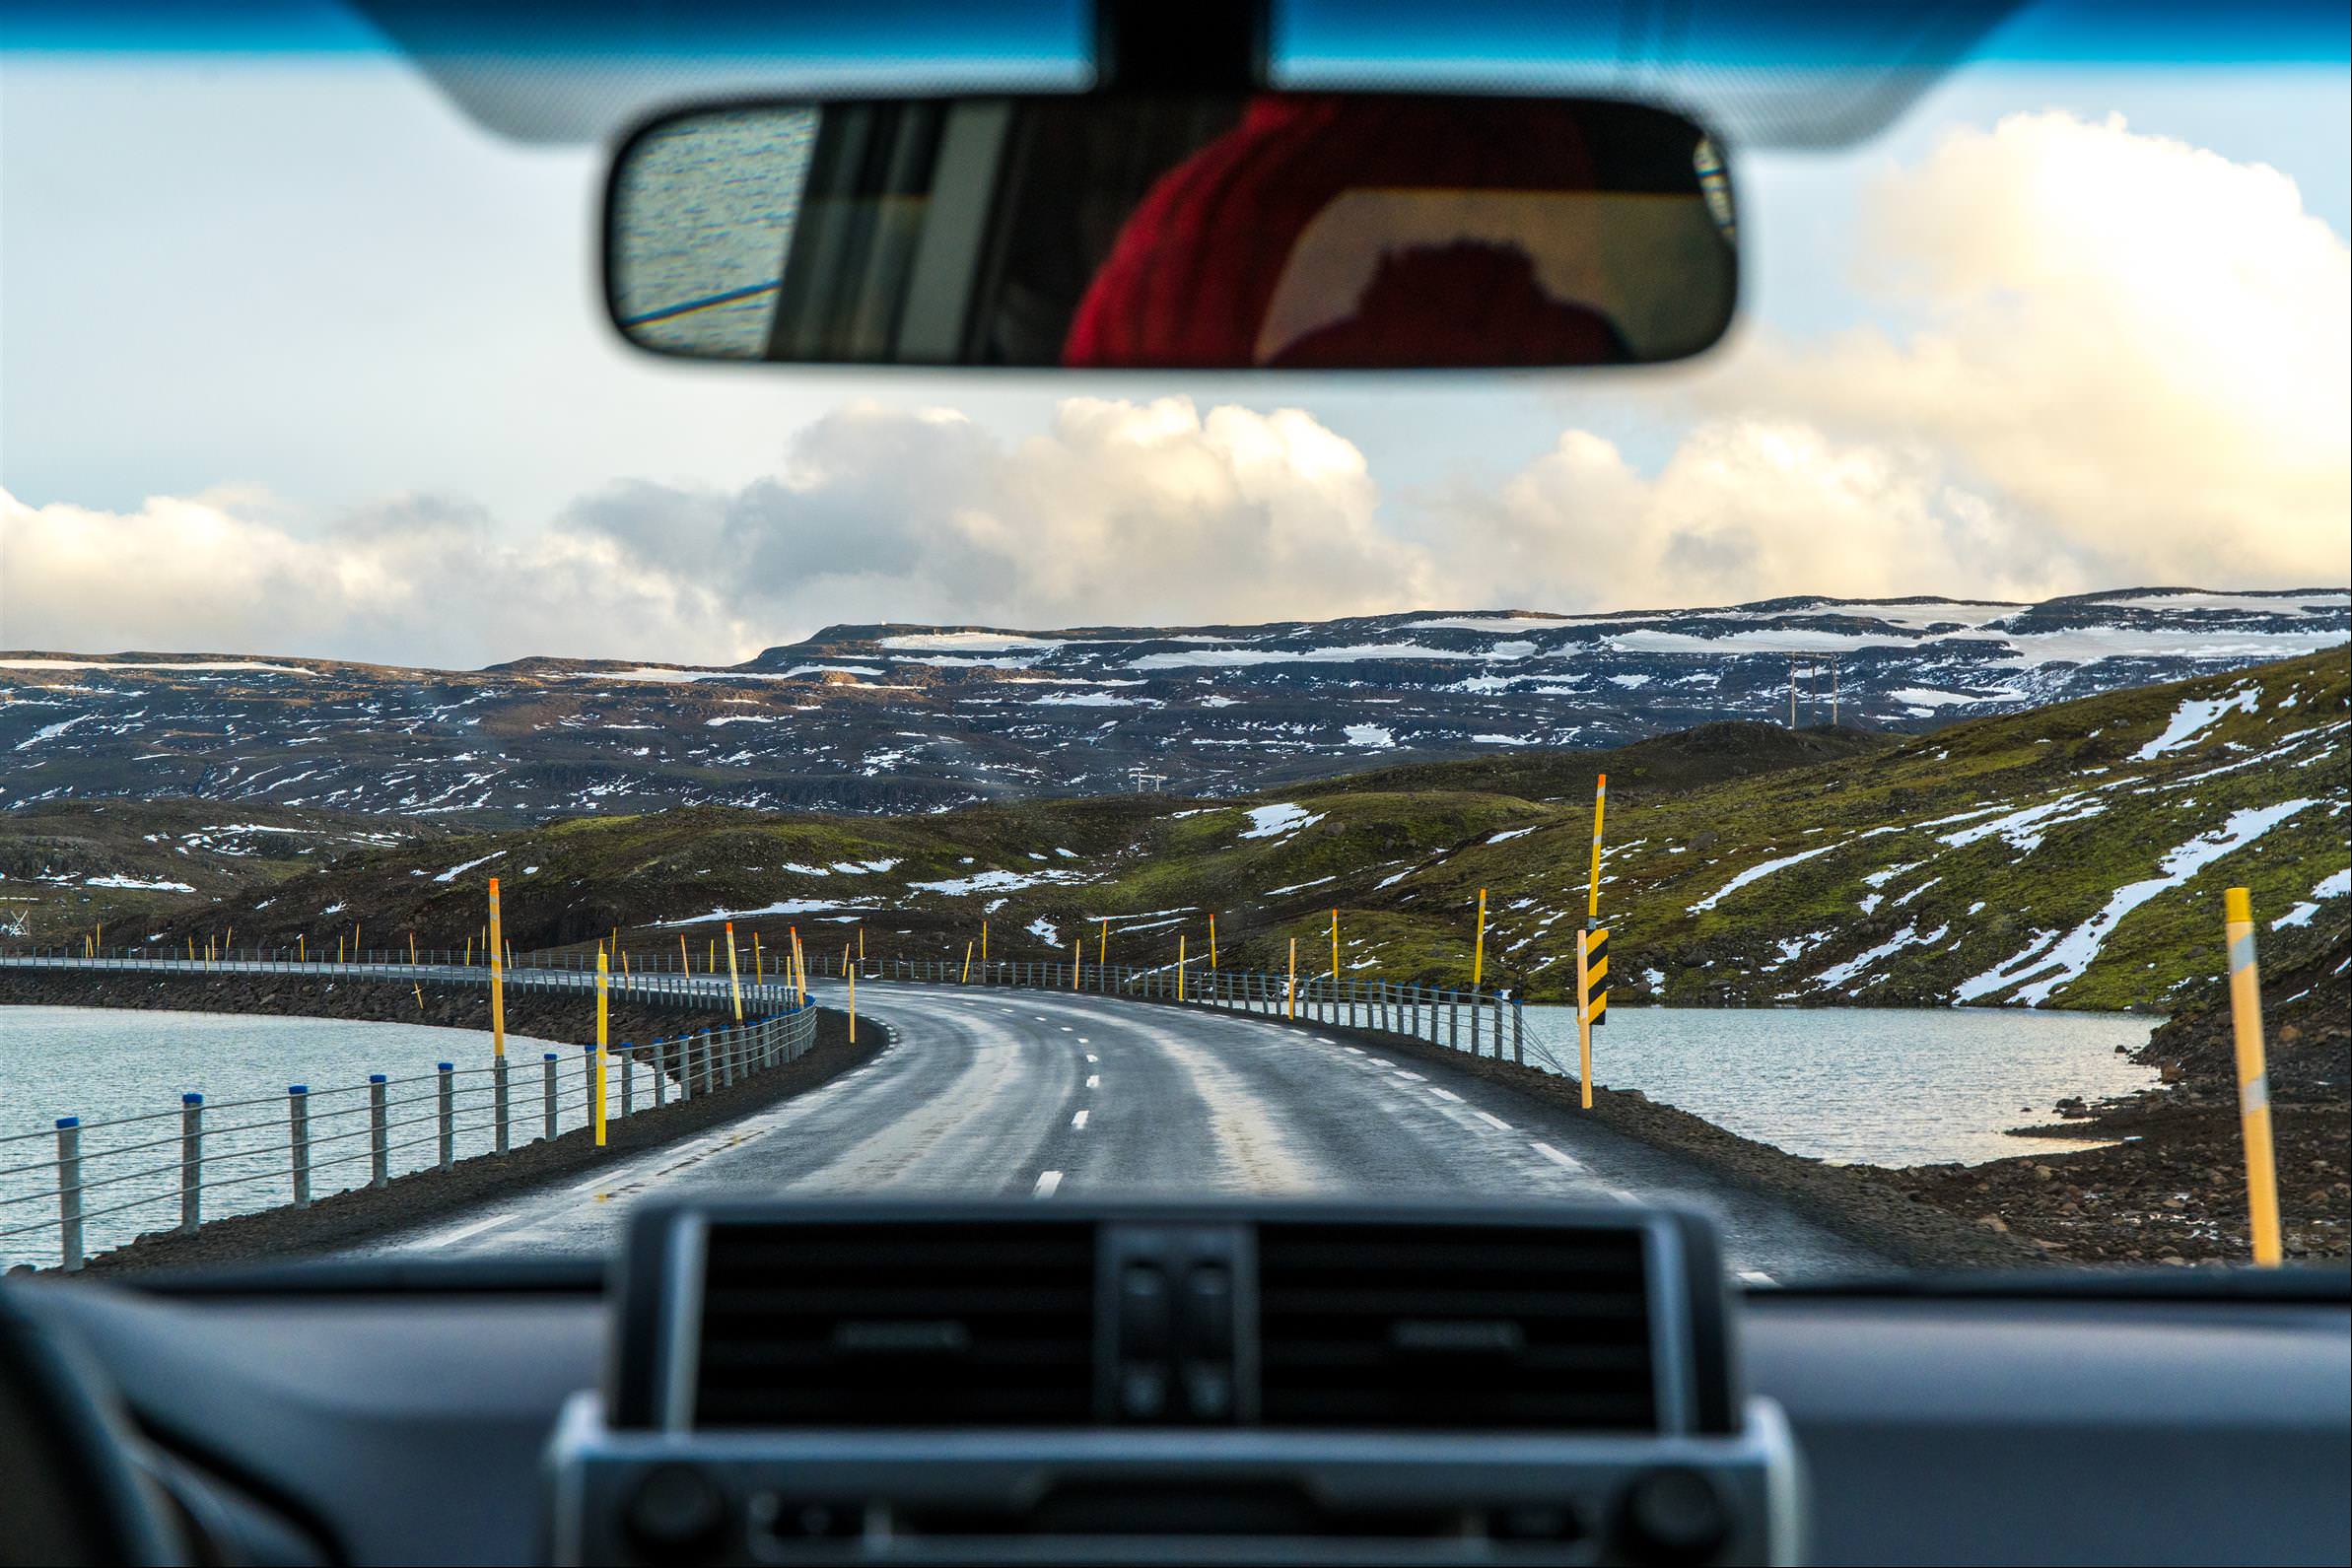 [冰島/東岸] 冰島自駕推薦路線, 埃伊爾斯塔濟&塞濟斯菲厄澤 93 號公路